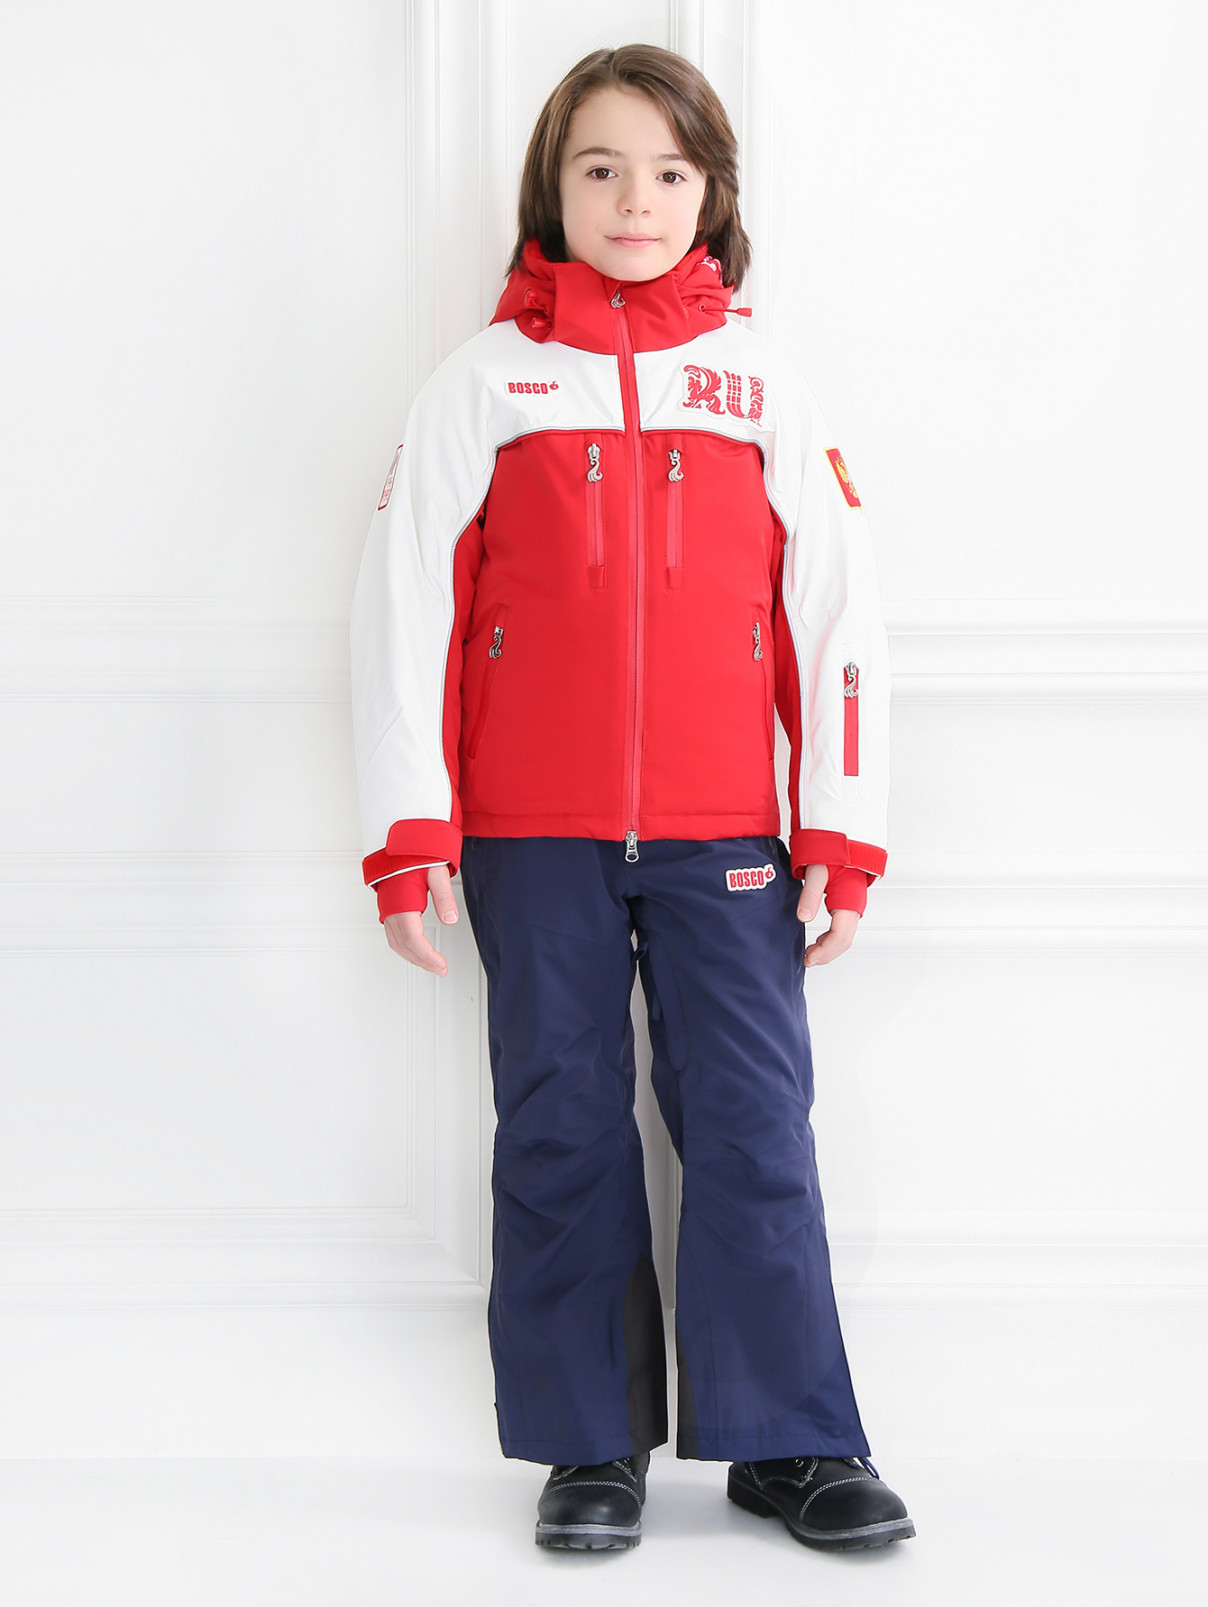 Куртка горнолыжная с контрастными вставками BOSCO  –  Модель Общий вид  – Цвет:  Красный